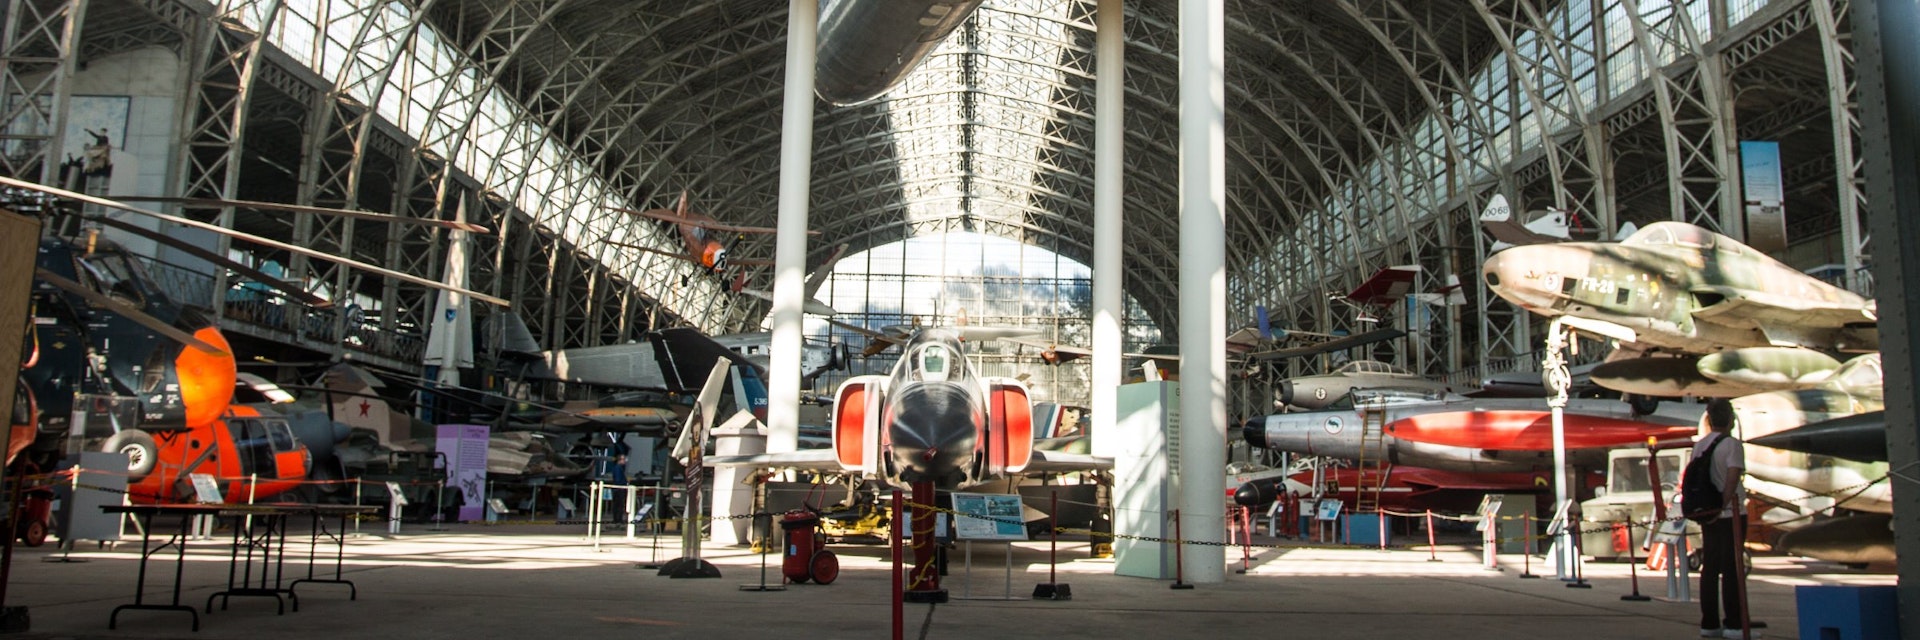 Musée Royal Armee Planes